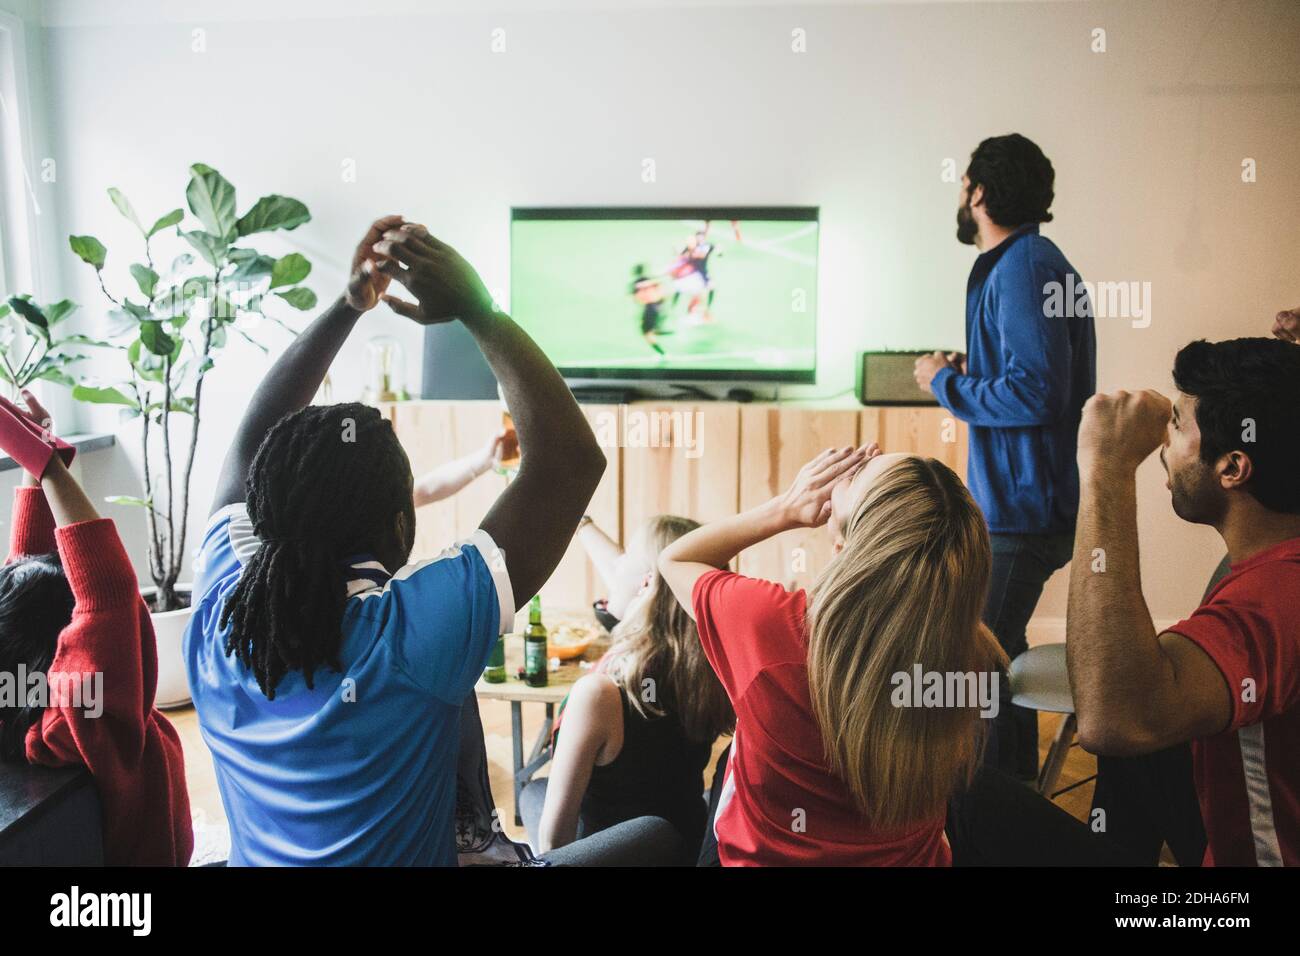 Les fans applaudissent tout en regardant un match de football à la télévision à la maison Banque D'Images